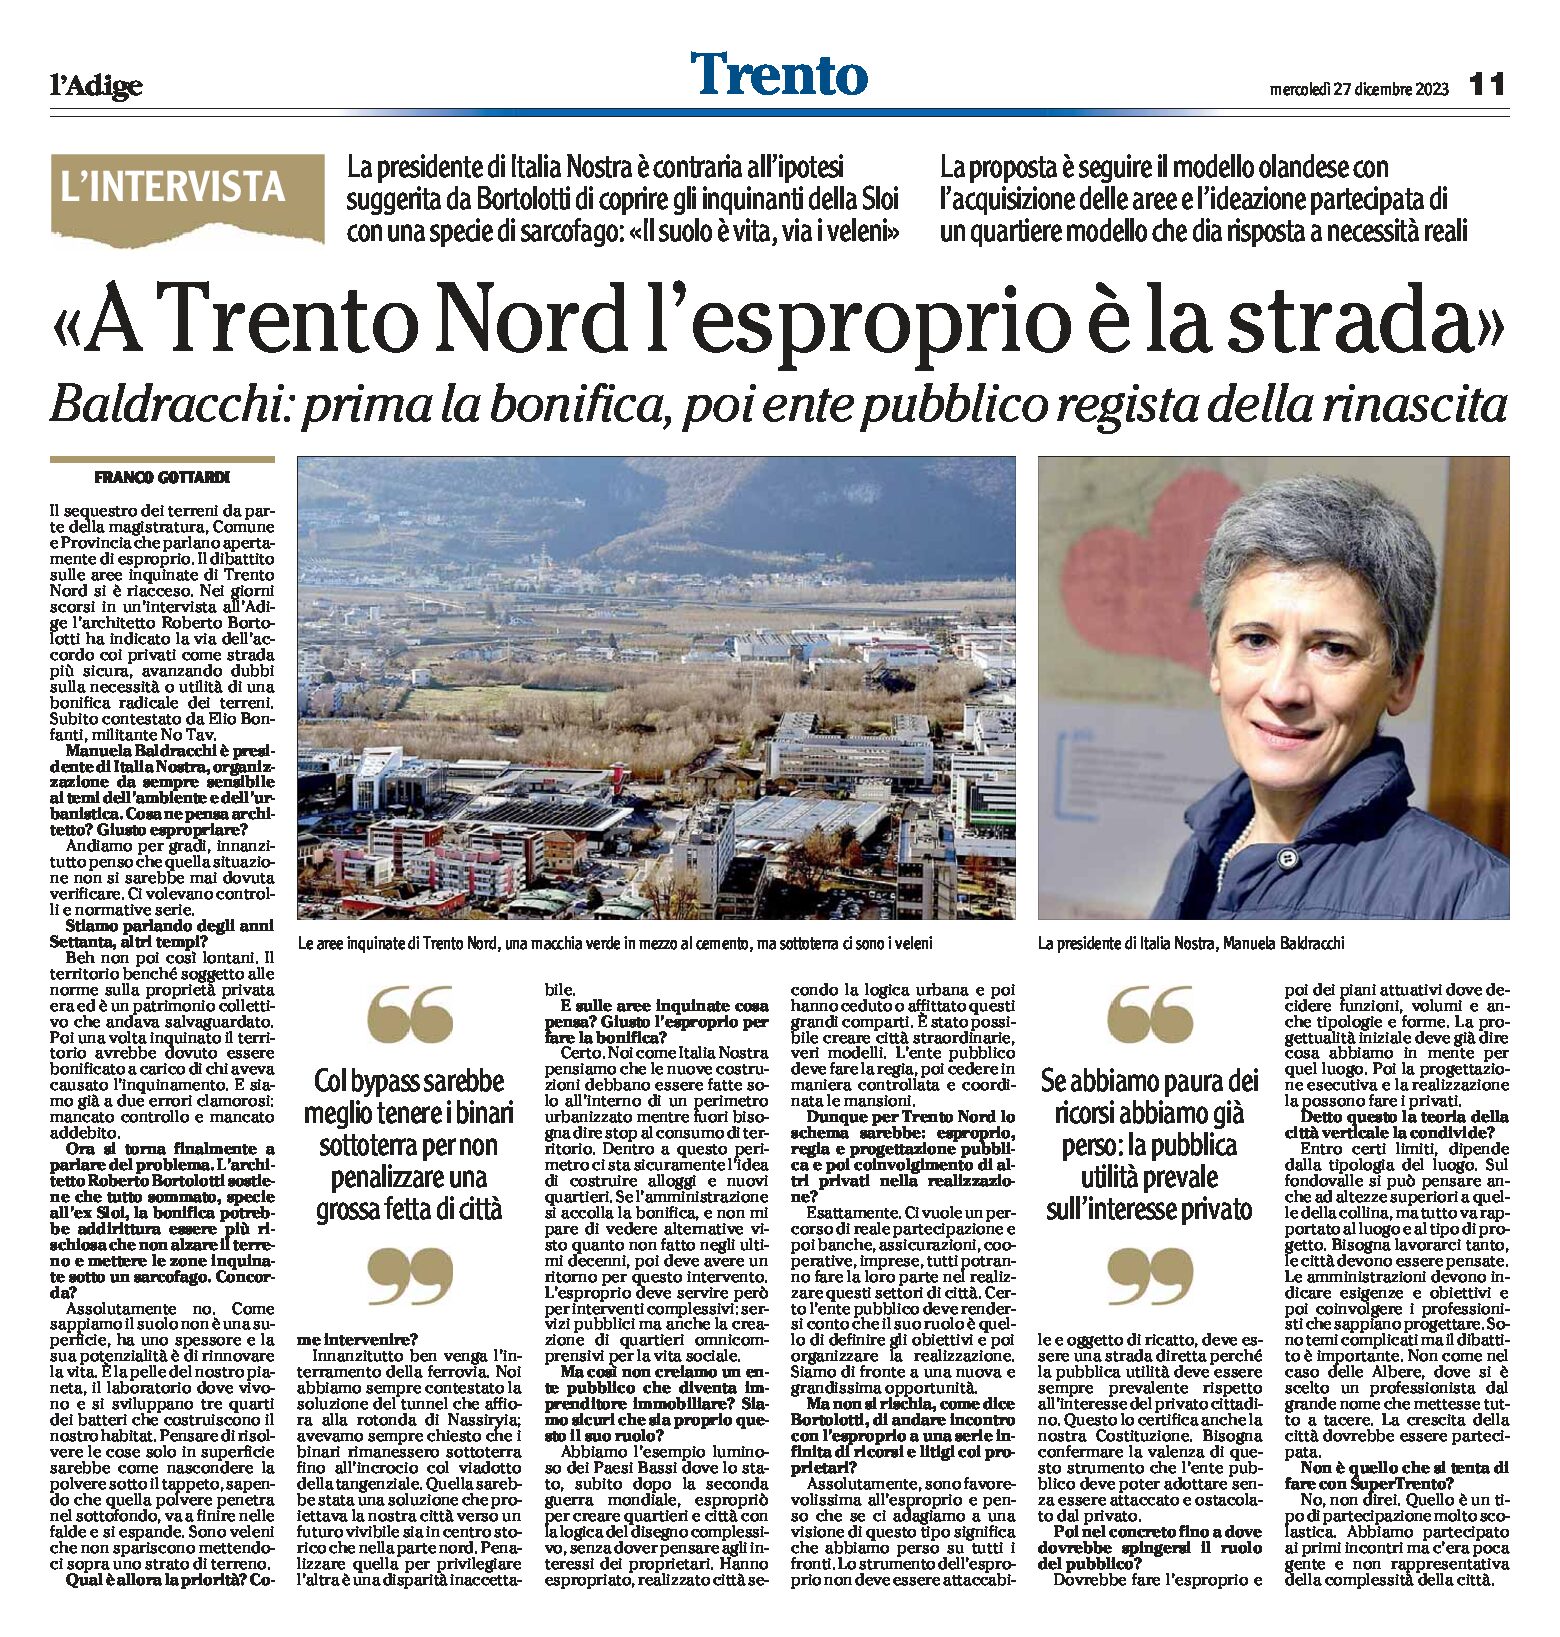 Trento Nord: la strada è l’esproprio. Intervista alla presidente di Italia Nostra